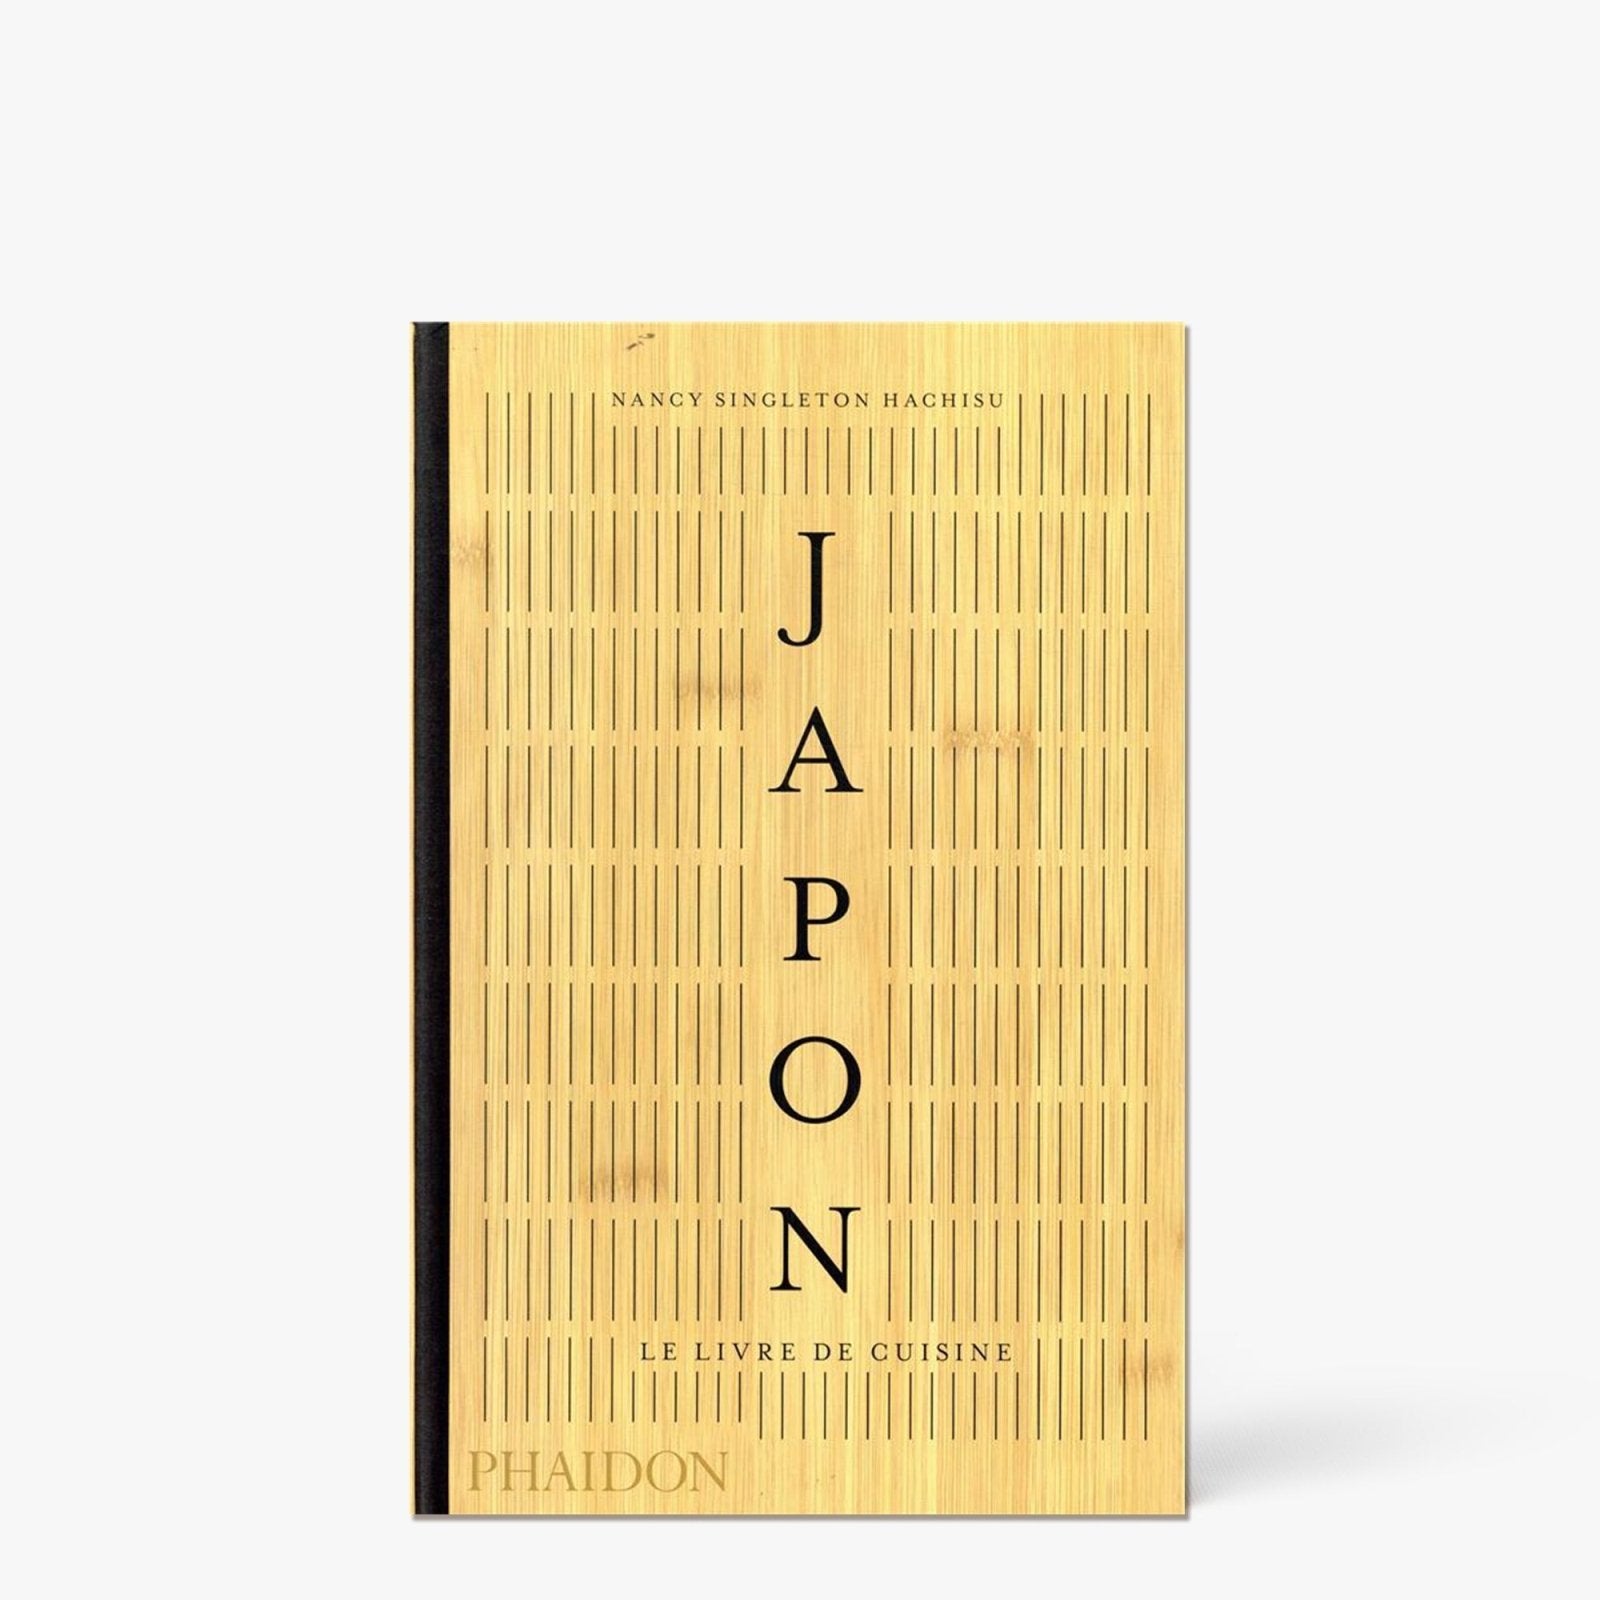 Japon le livre de cuisine - Phaidon - iRASSHAi